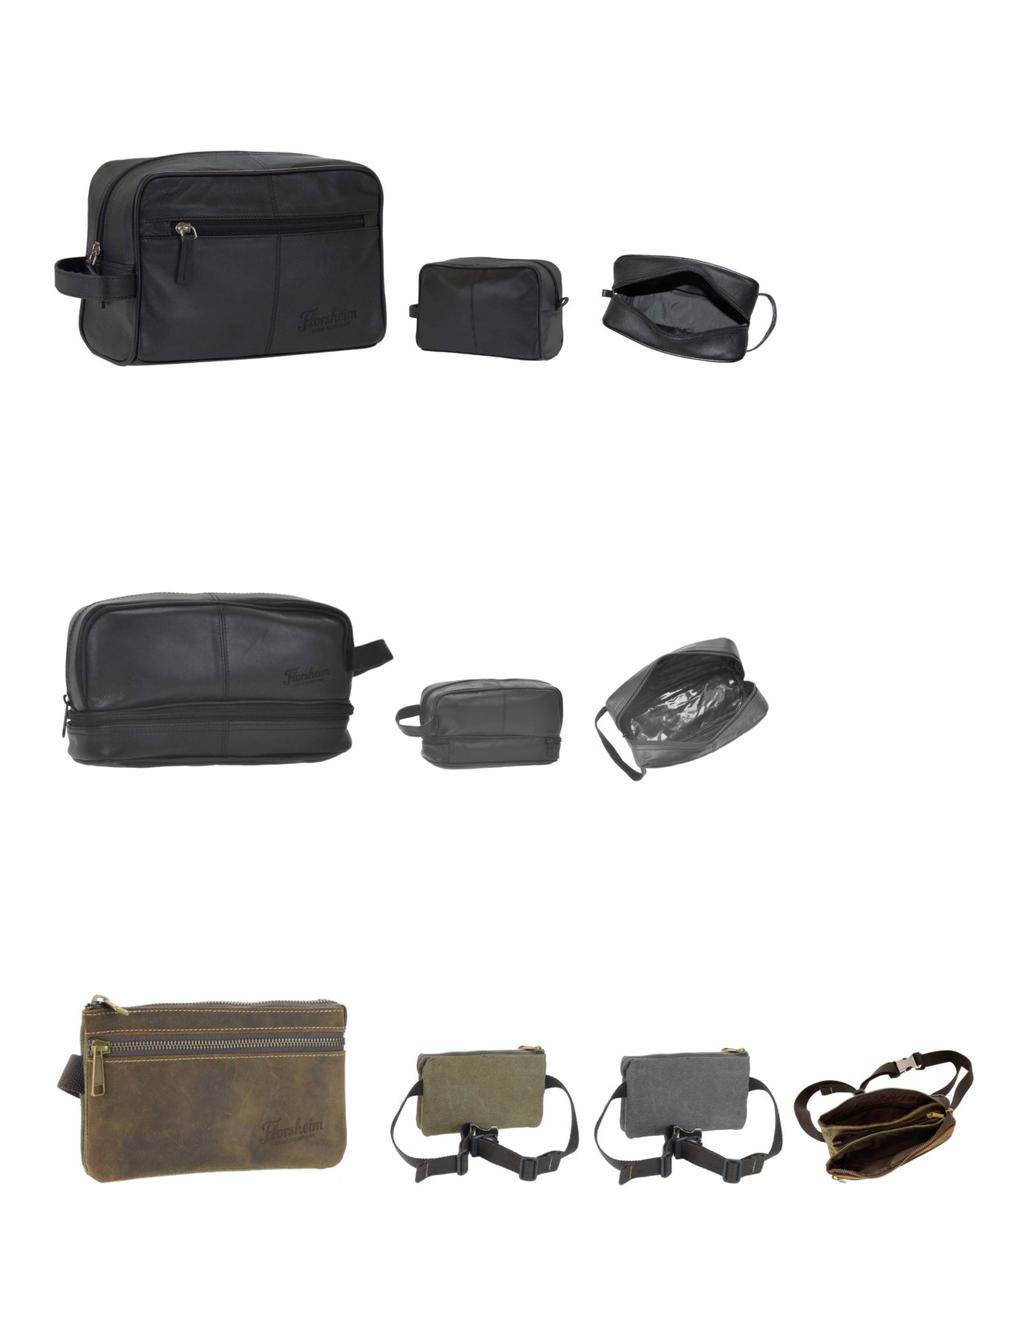 FL#5-517-3D Black cow leather shave kit. 6.5 x 9.5 x 4.